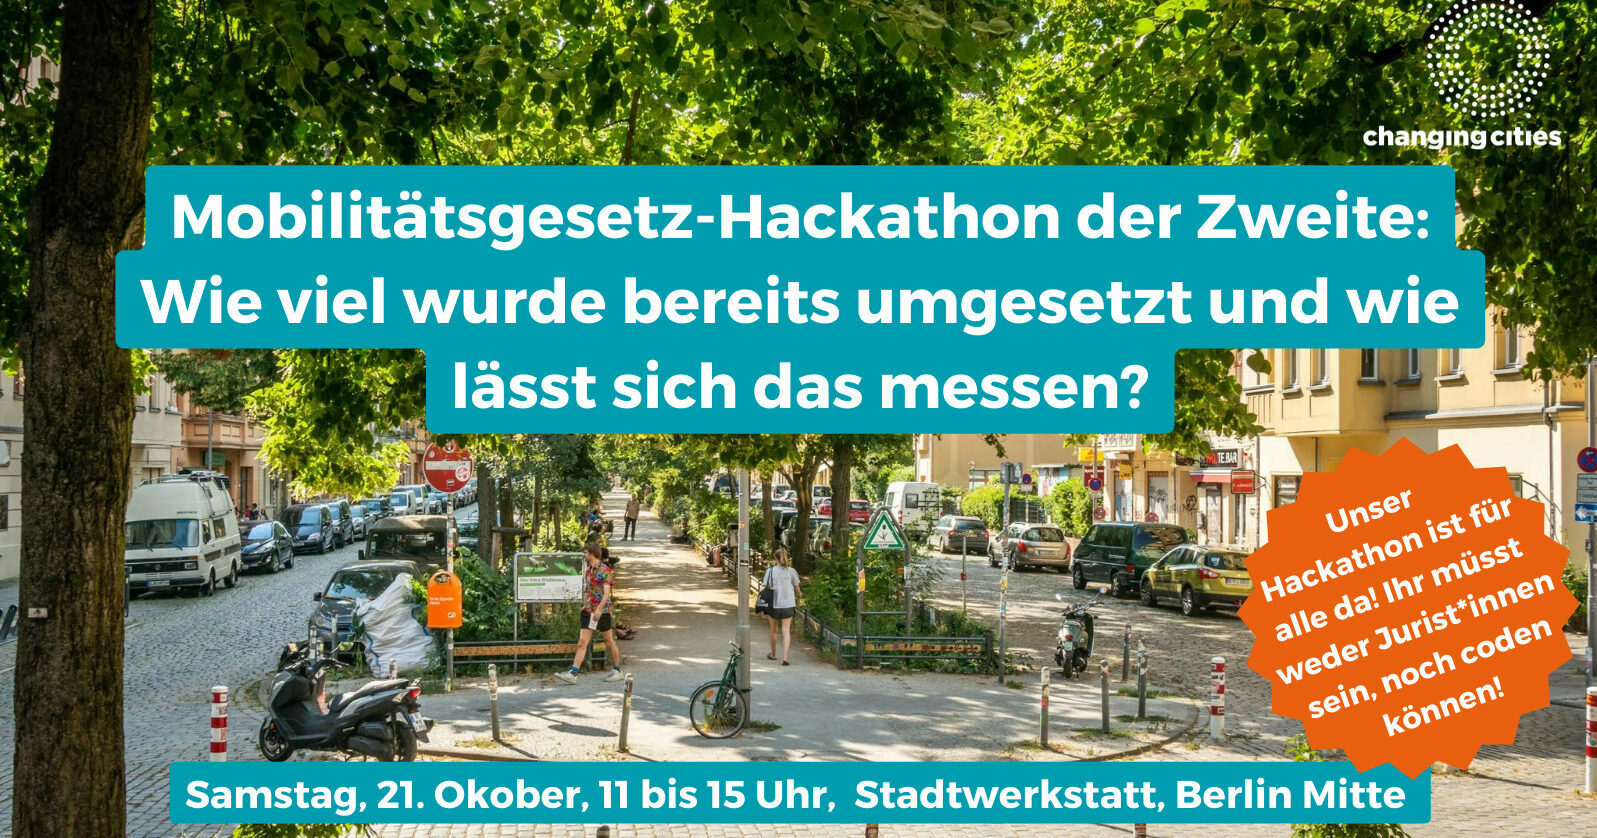 Mobilitätsgesetz-Hackathon der Zweite: 21. Oktober, 11-15 Uhr in der Stadtwerkstatt Berlin.